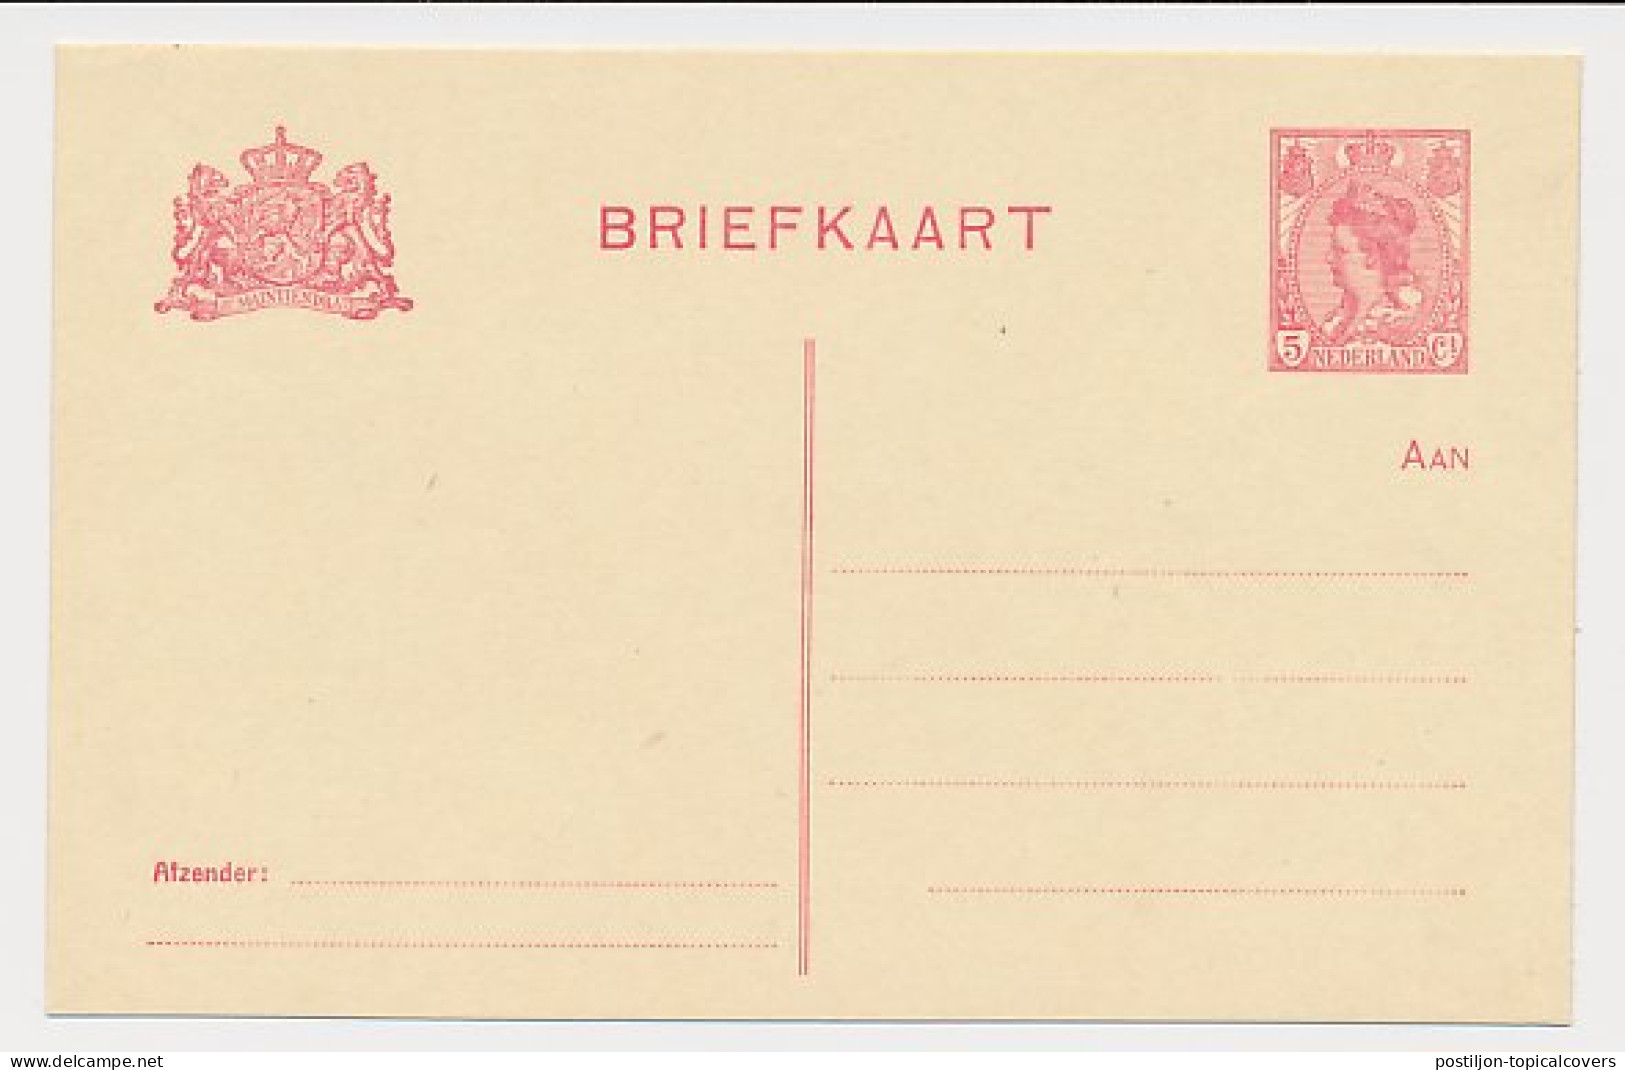 Briefkaart G. 103 I - Ganzsachen